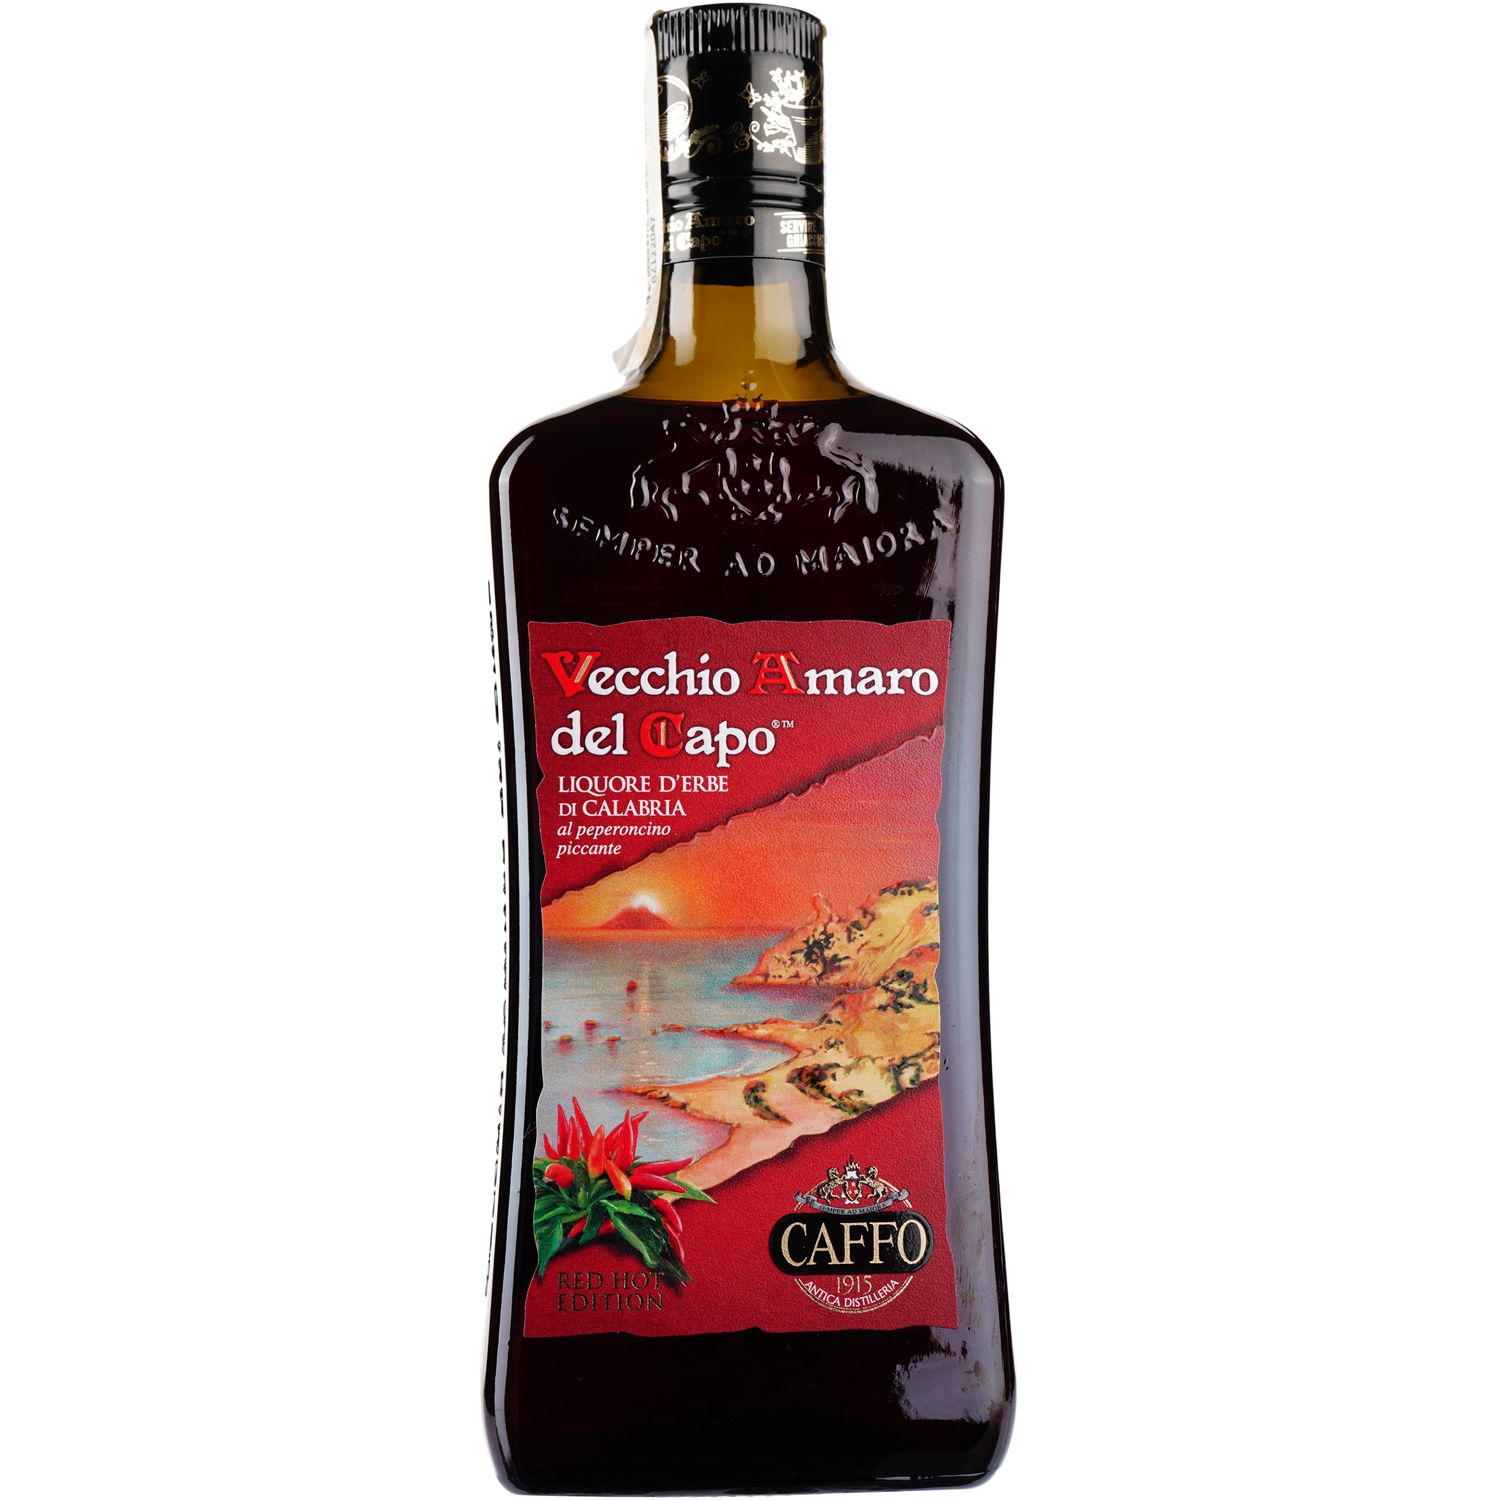 Лікер Caffo Vecchio Amaro del Capo Red Hot Edition, 35%, 0,7 л - фото 1